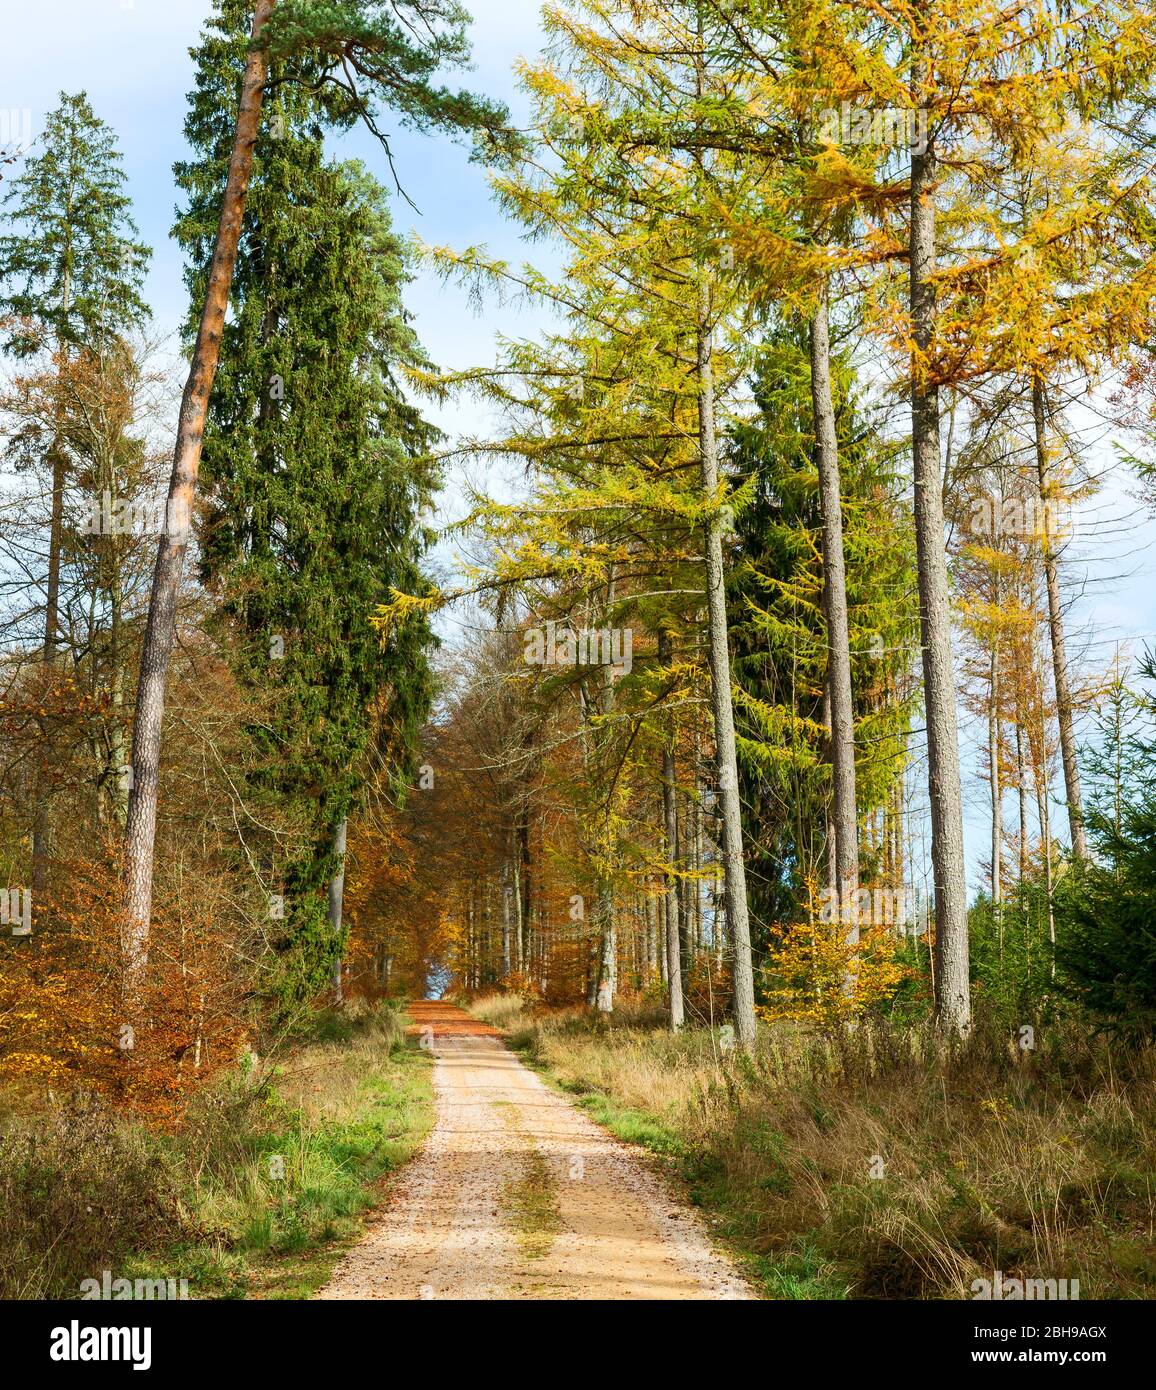 Allemagne, Bade-Wurtemberg, Sigmaringen, chemin à travers la forêt mixte de conifères dans la forêt Josefslust, un terrain de chasse de la Maison de Hohenzollern. Le parc Josefslust est ouvert au public comme zone de loisirs. Banque D'Images